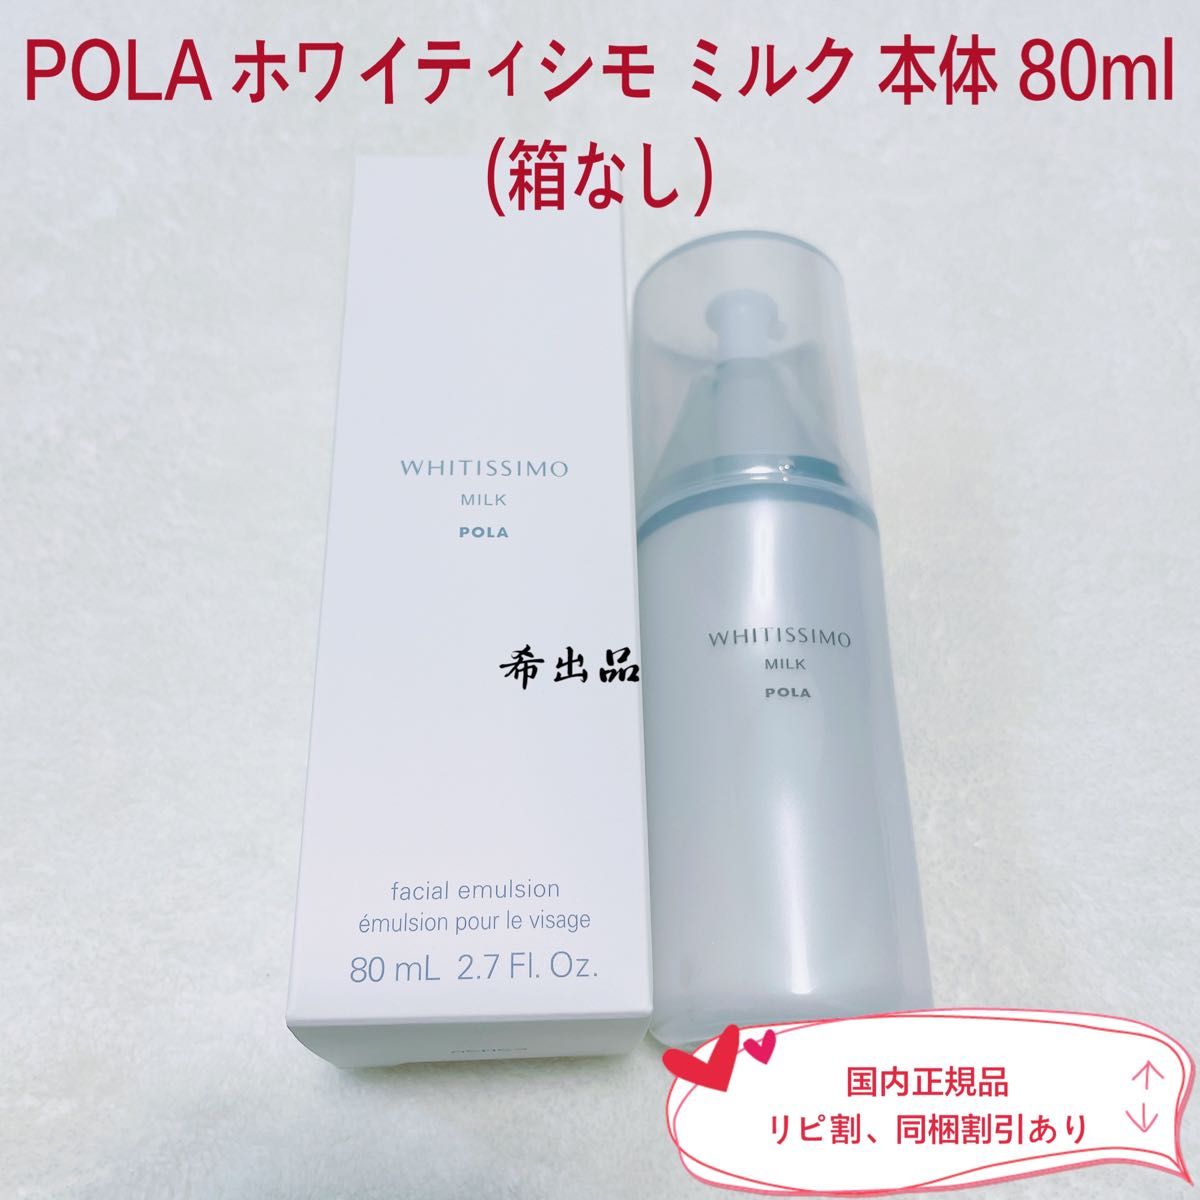 【新品】POLA ホワイティシモ ミルク 本体 80ml